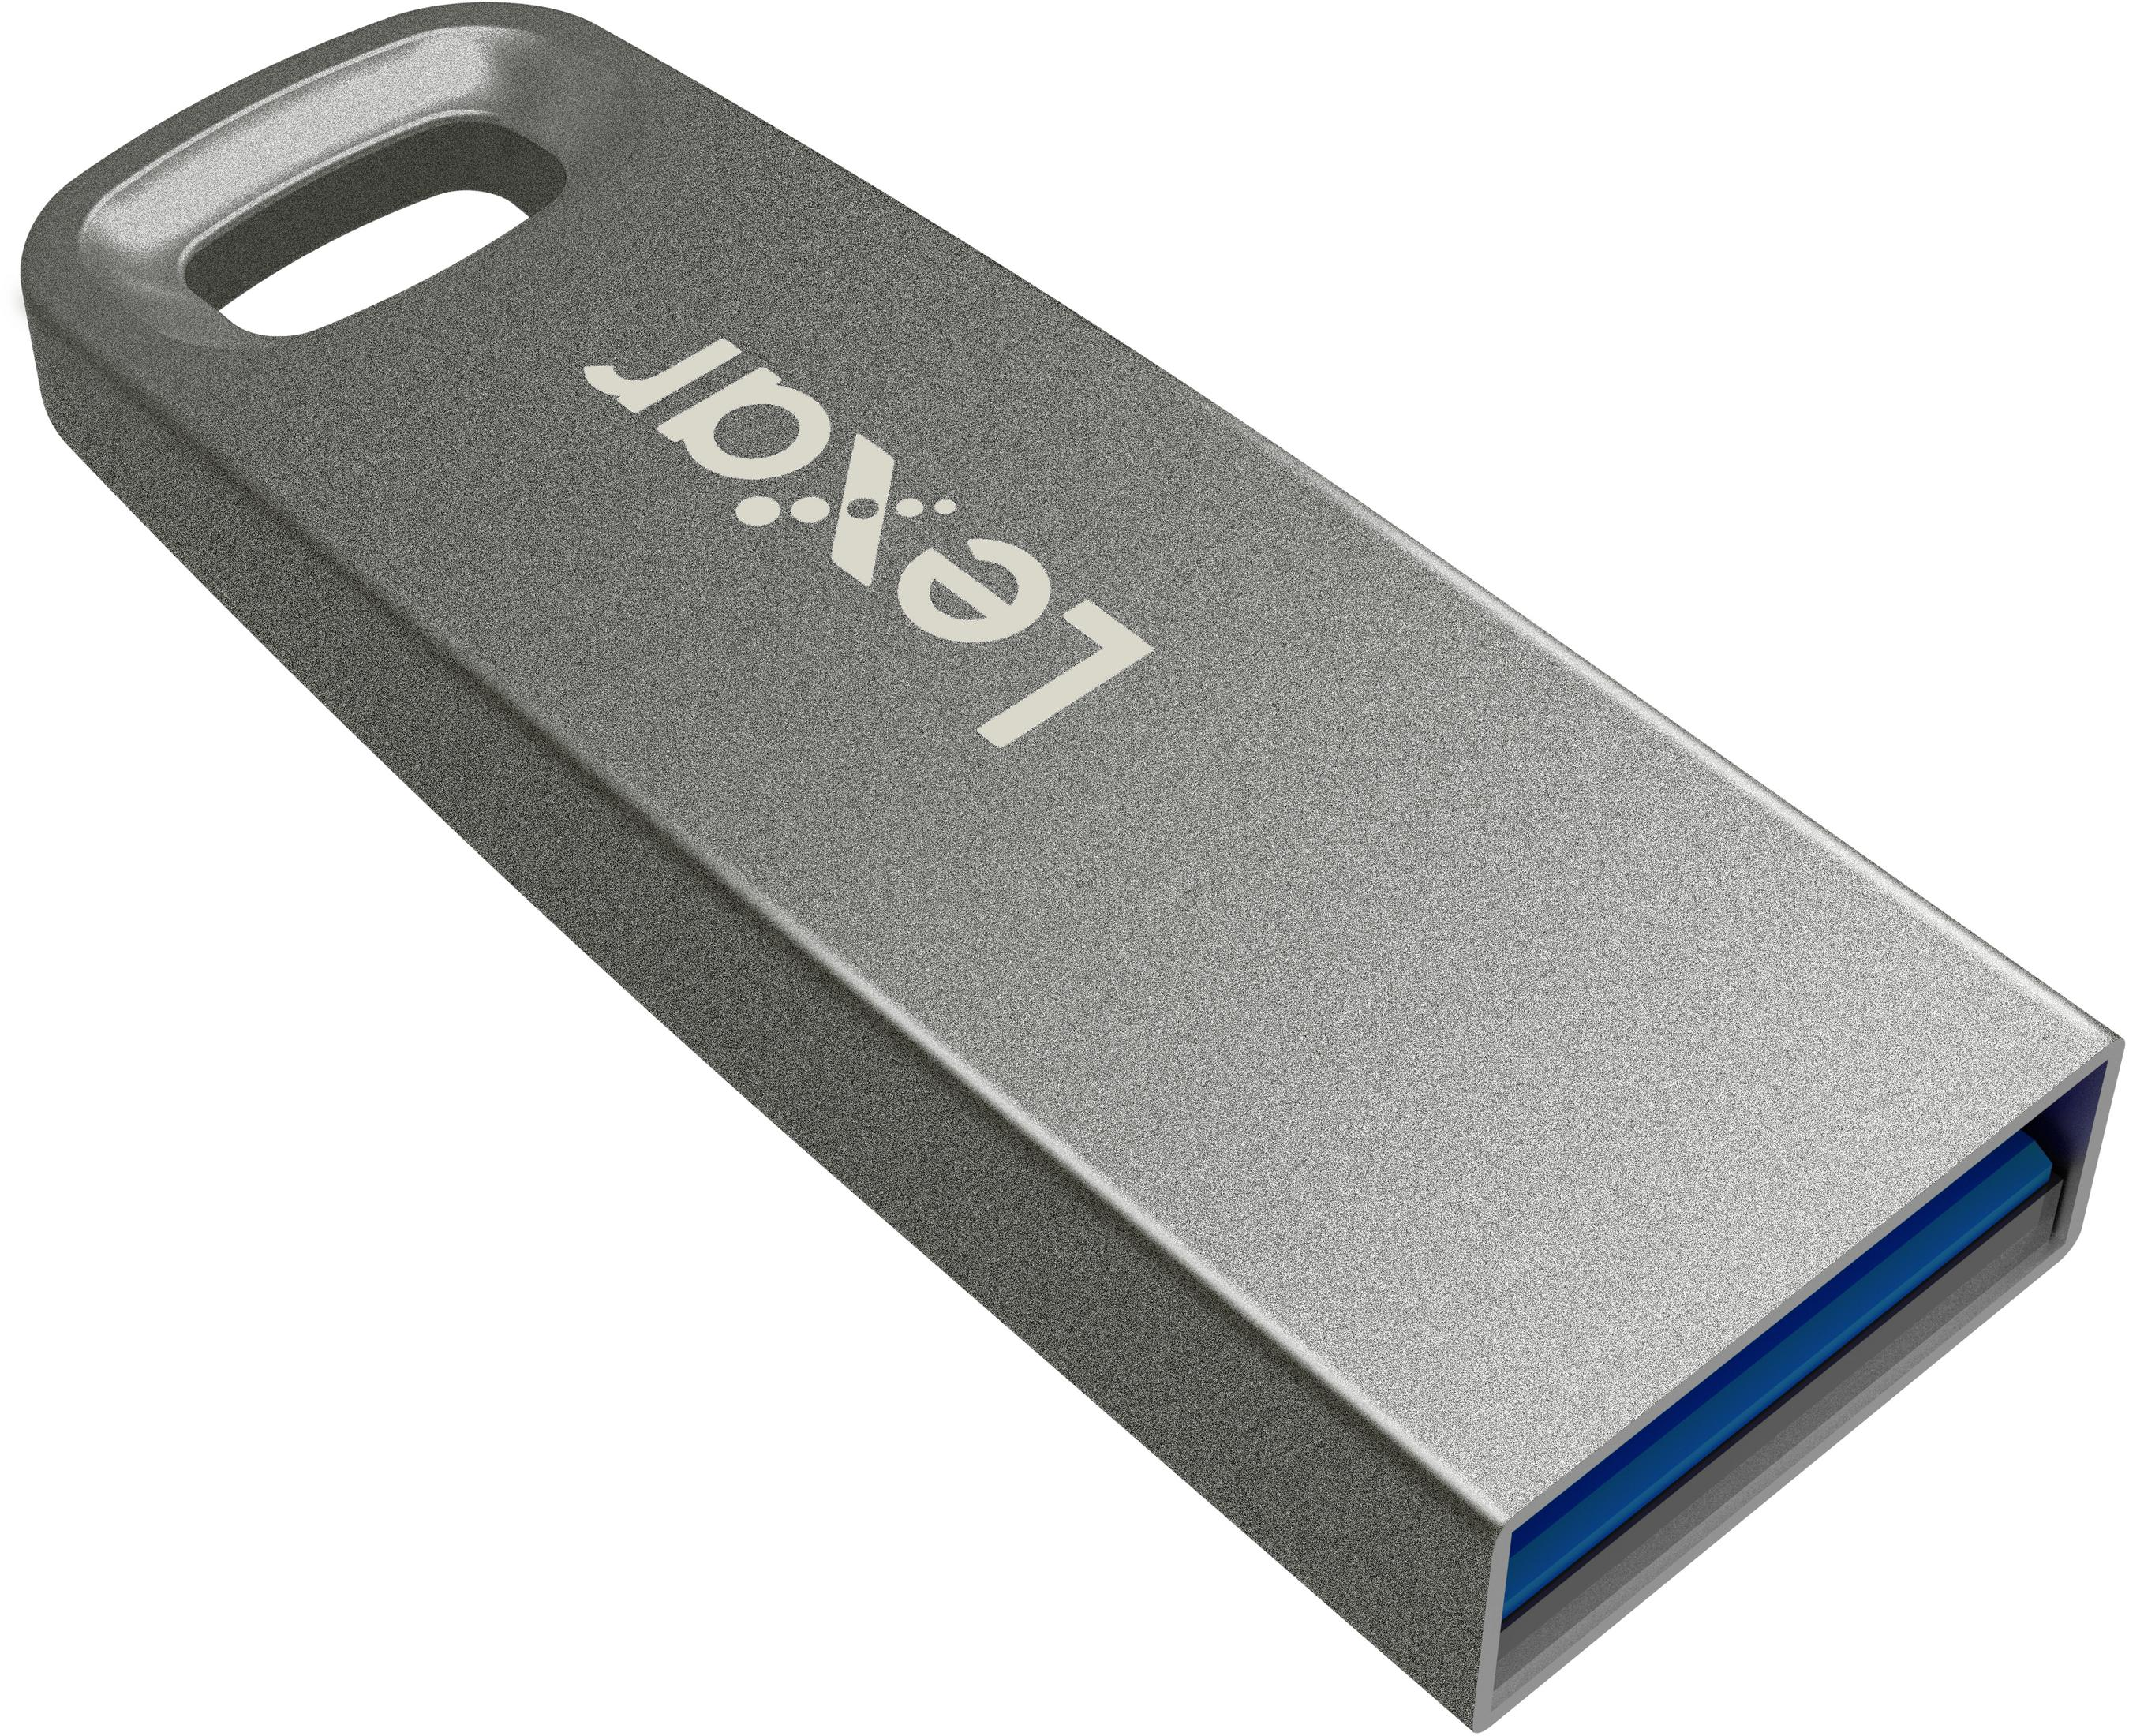 LEXAR LJDM45-256ABSL JUMPDRIV M45 256GB 256 SILVER250 (Silber, USB3.1 GB) USB-Stick